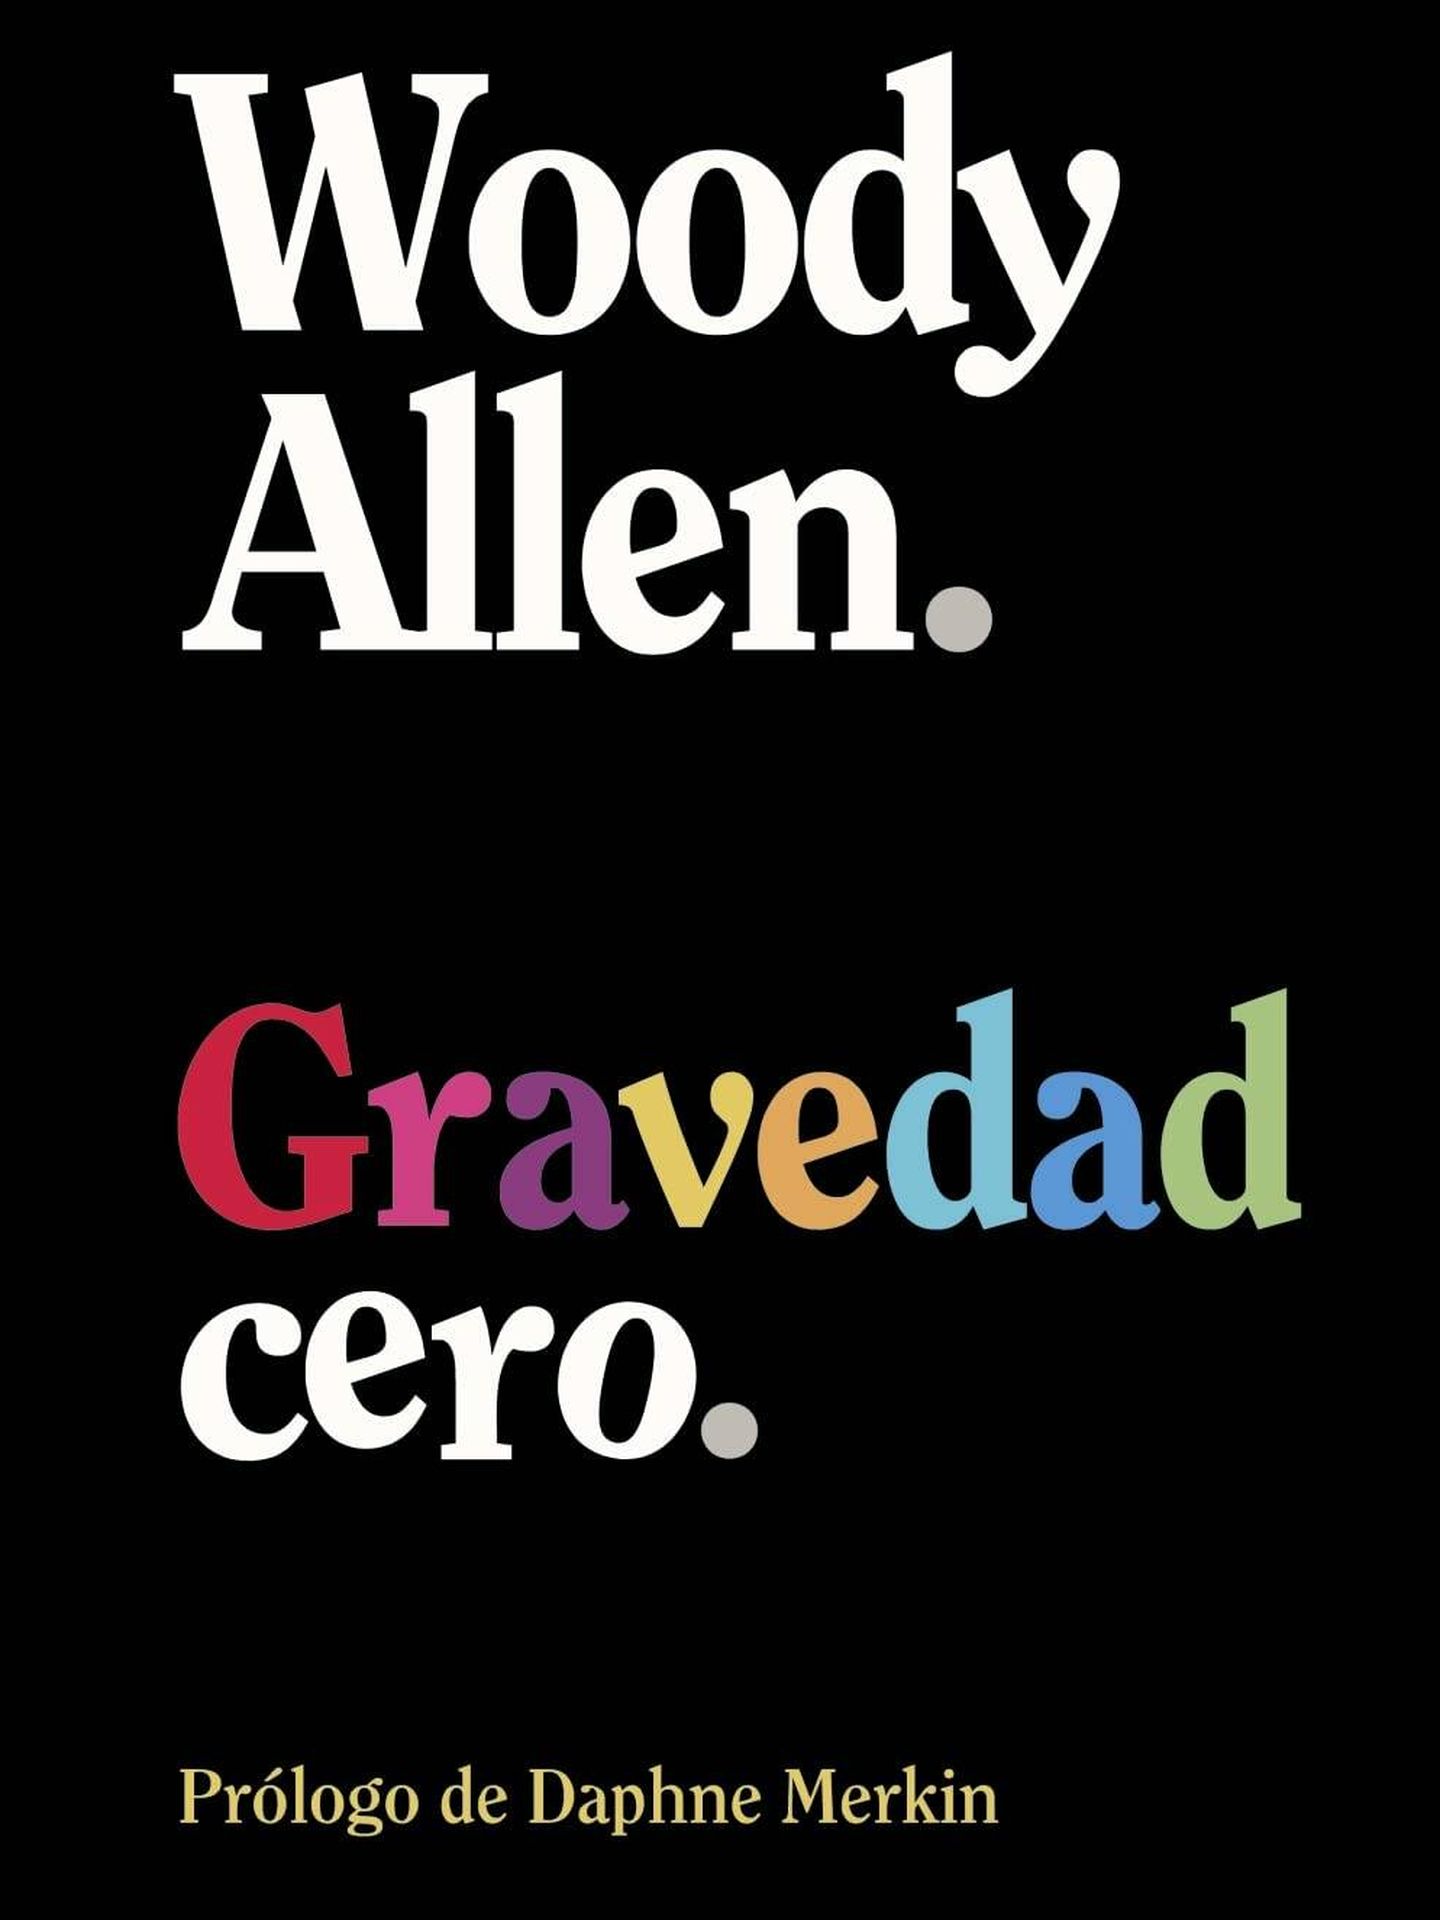 'Gravedad cero', de Woody Allen. 